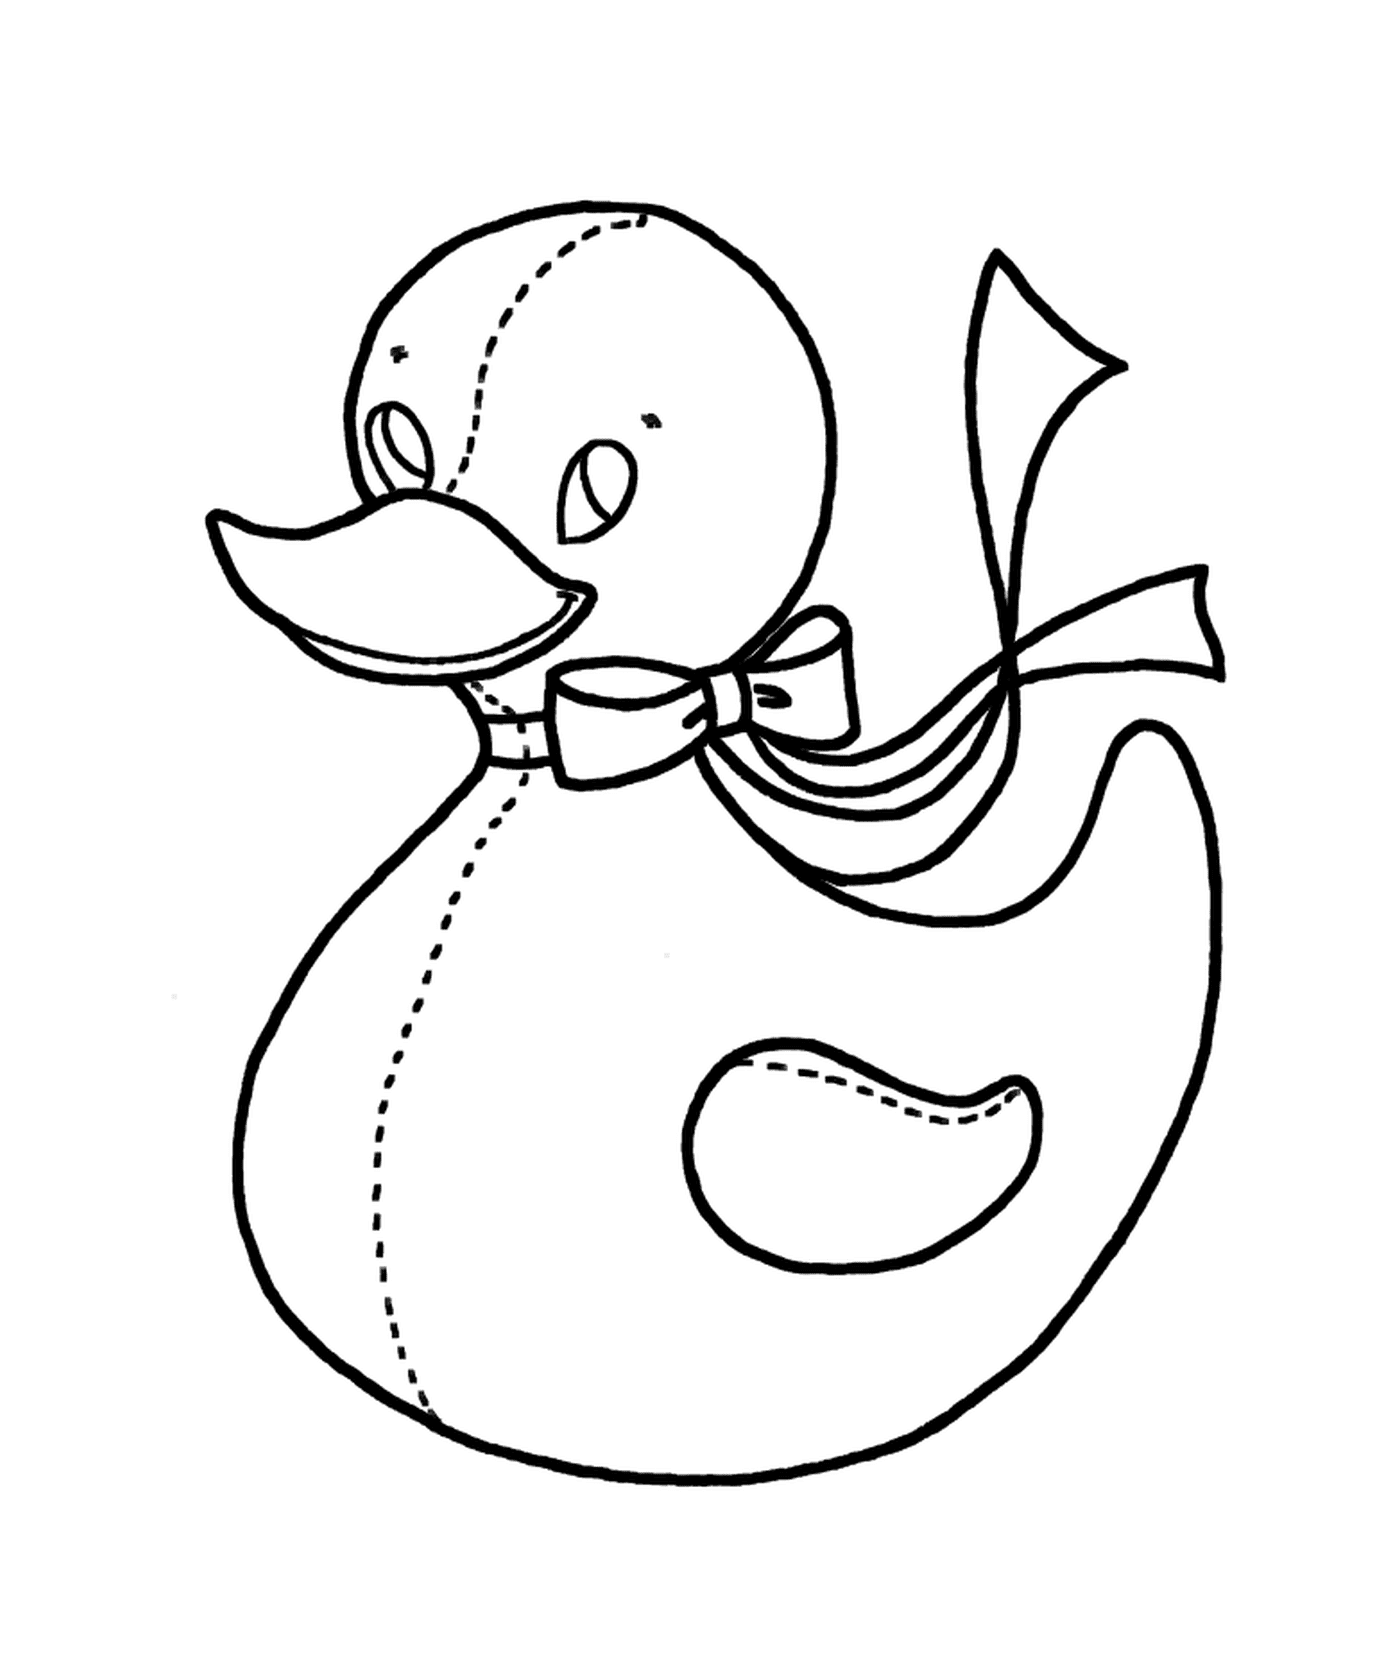  A duck 